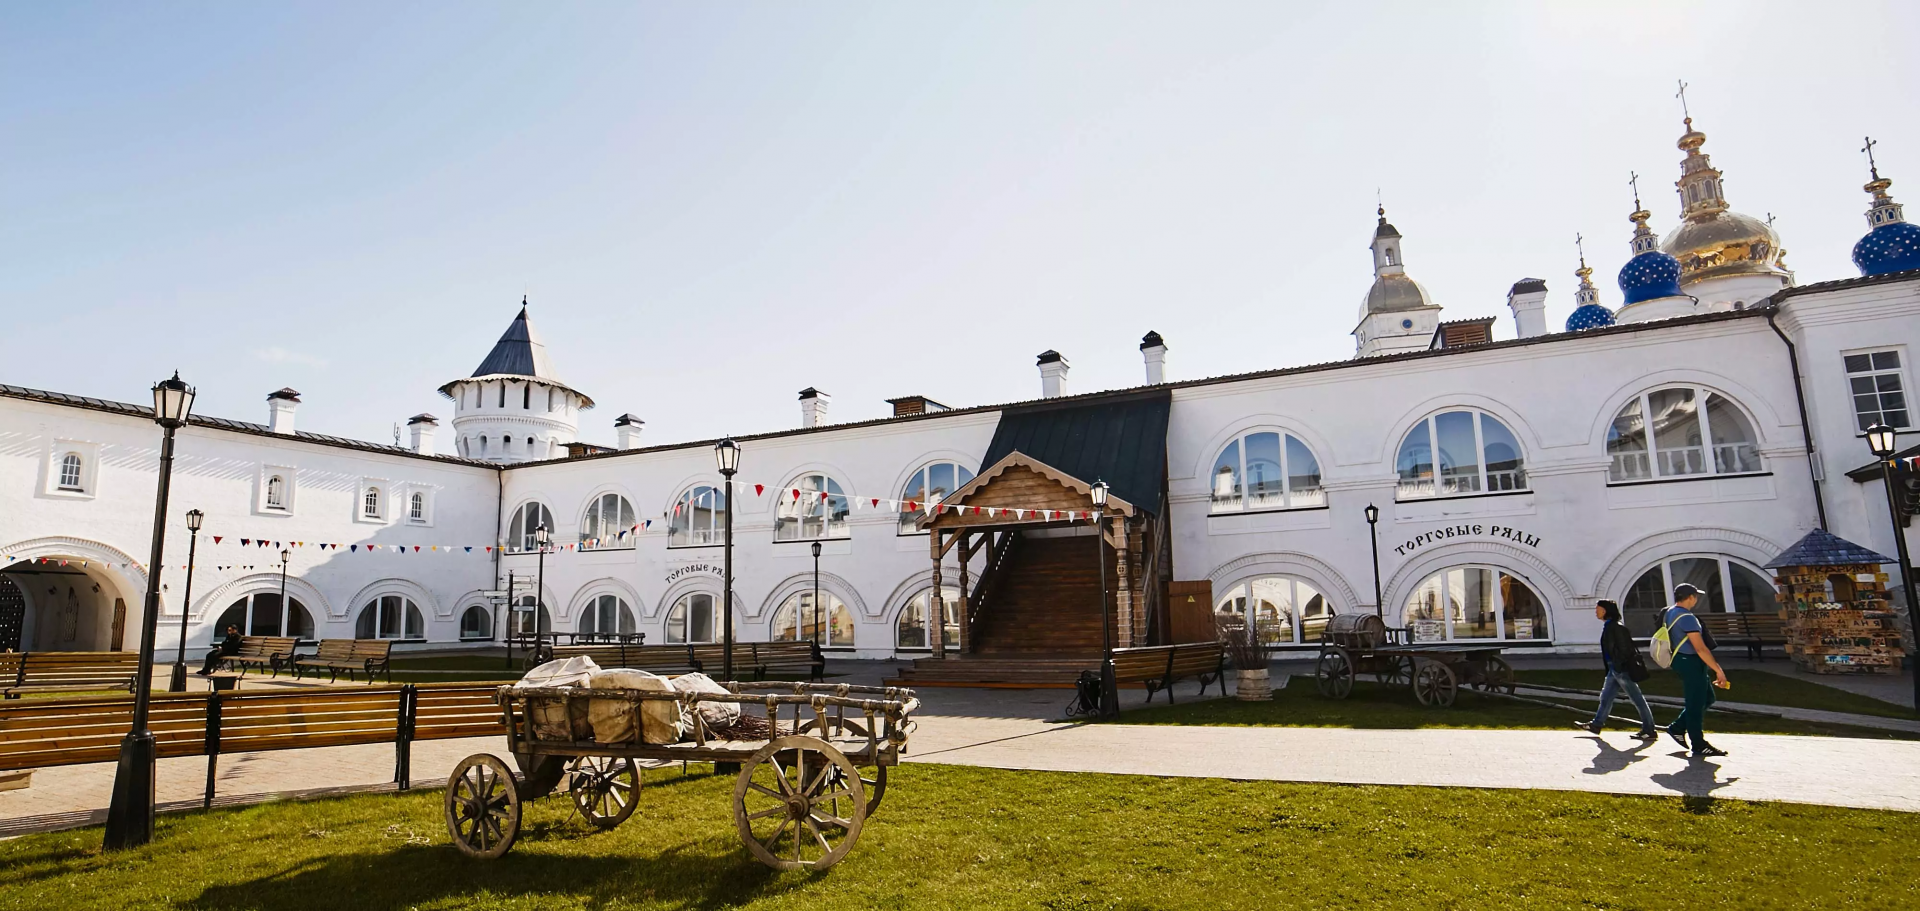 «Опочивальни» Гостиного двора: отдохнуть в Тобольске как знатный купец XVII века